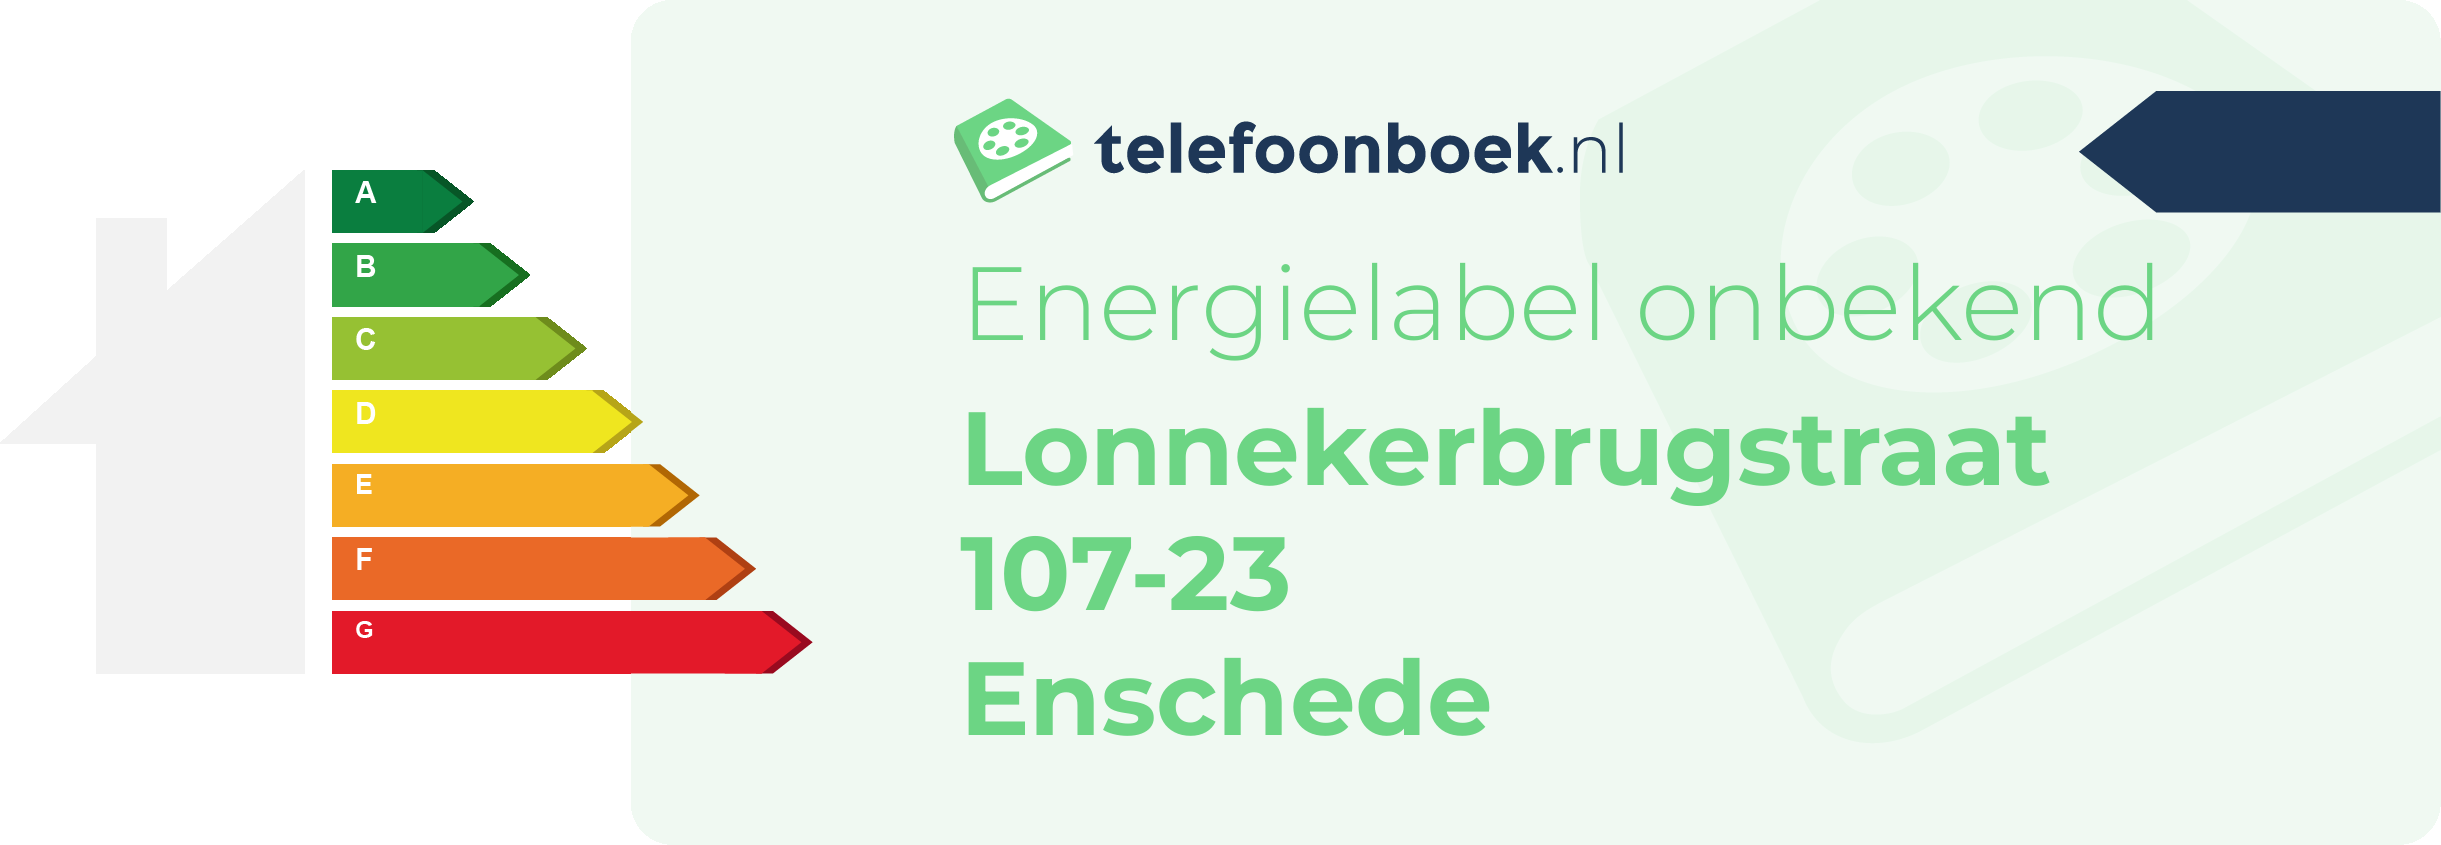 Energielabel Lonnekerbrugstraat 107-23 Enschede